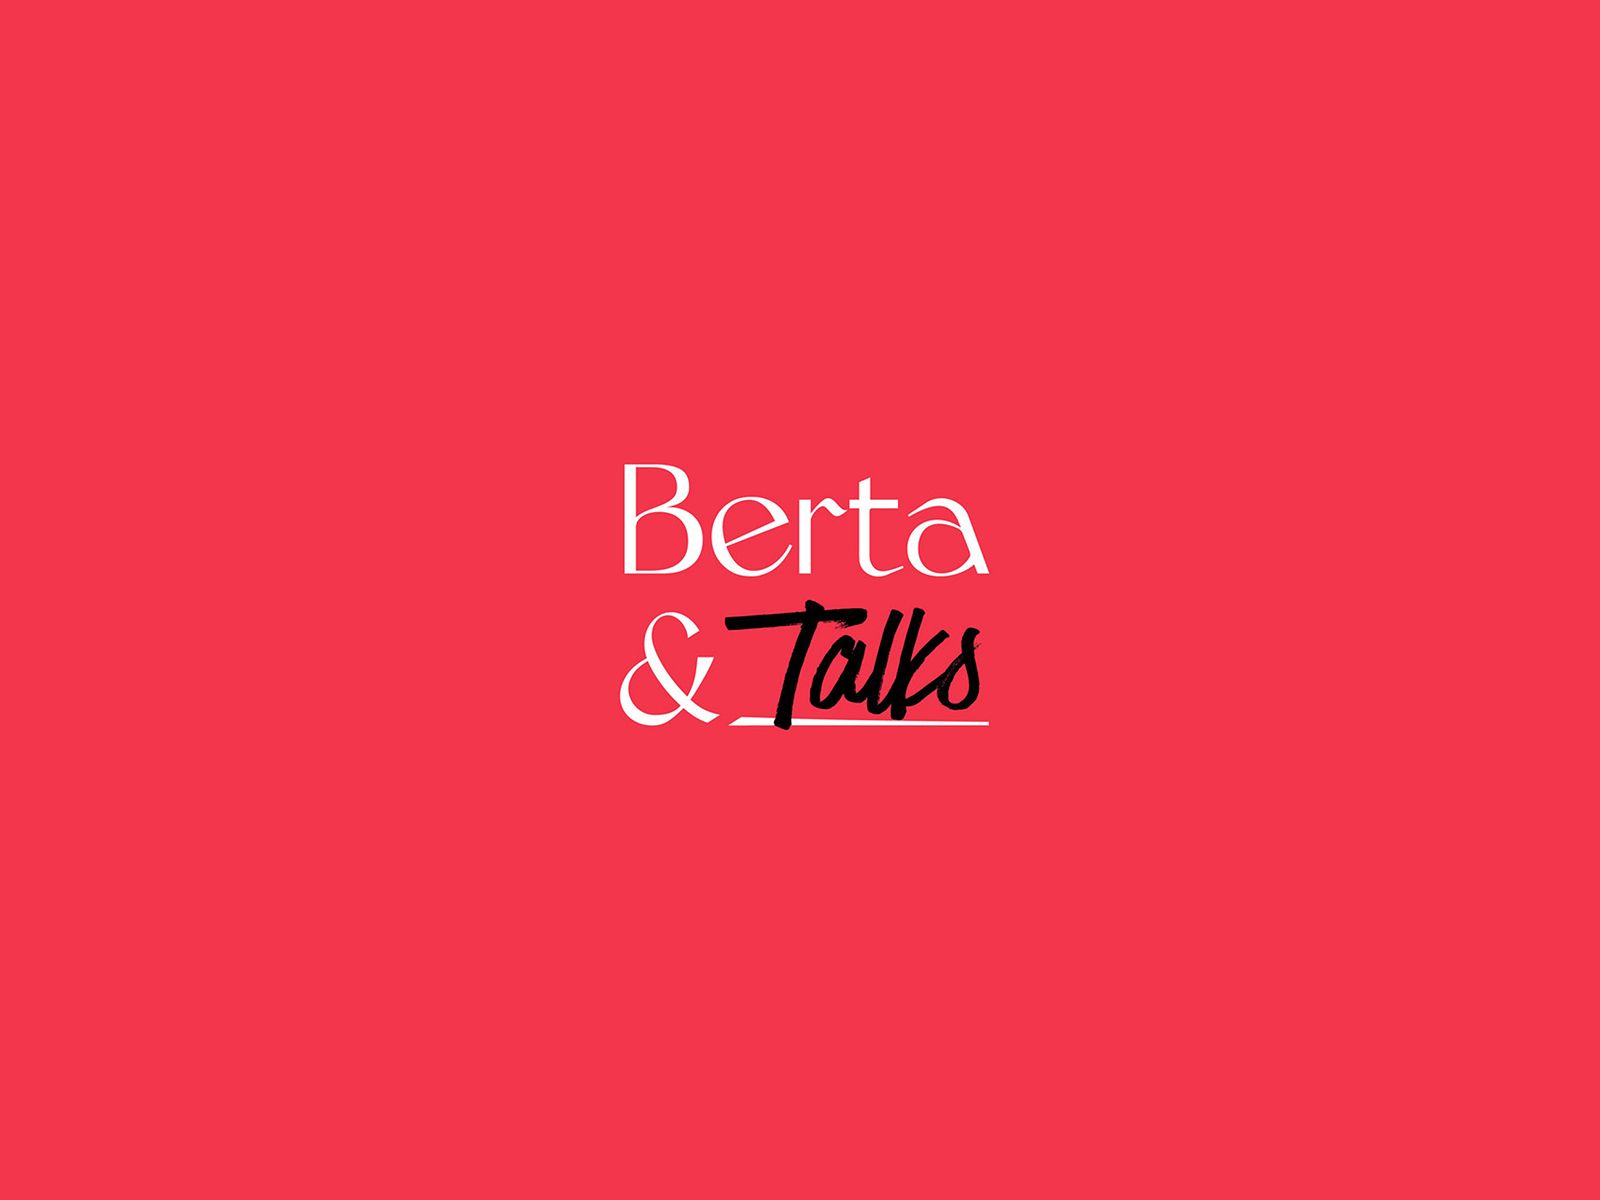 Berta-And-Agency_startuoja-tinklalaide-bertatalks-laukia-isskirtiniai-pokalbiai-apie-tradicine-komunikacija-ir-netradicini-poziuri-i-ja